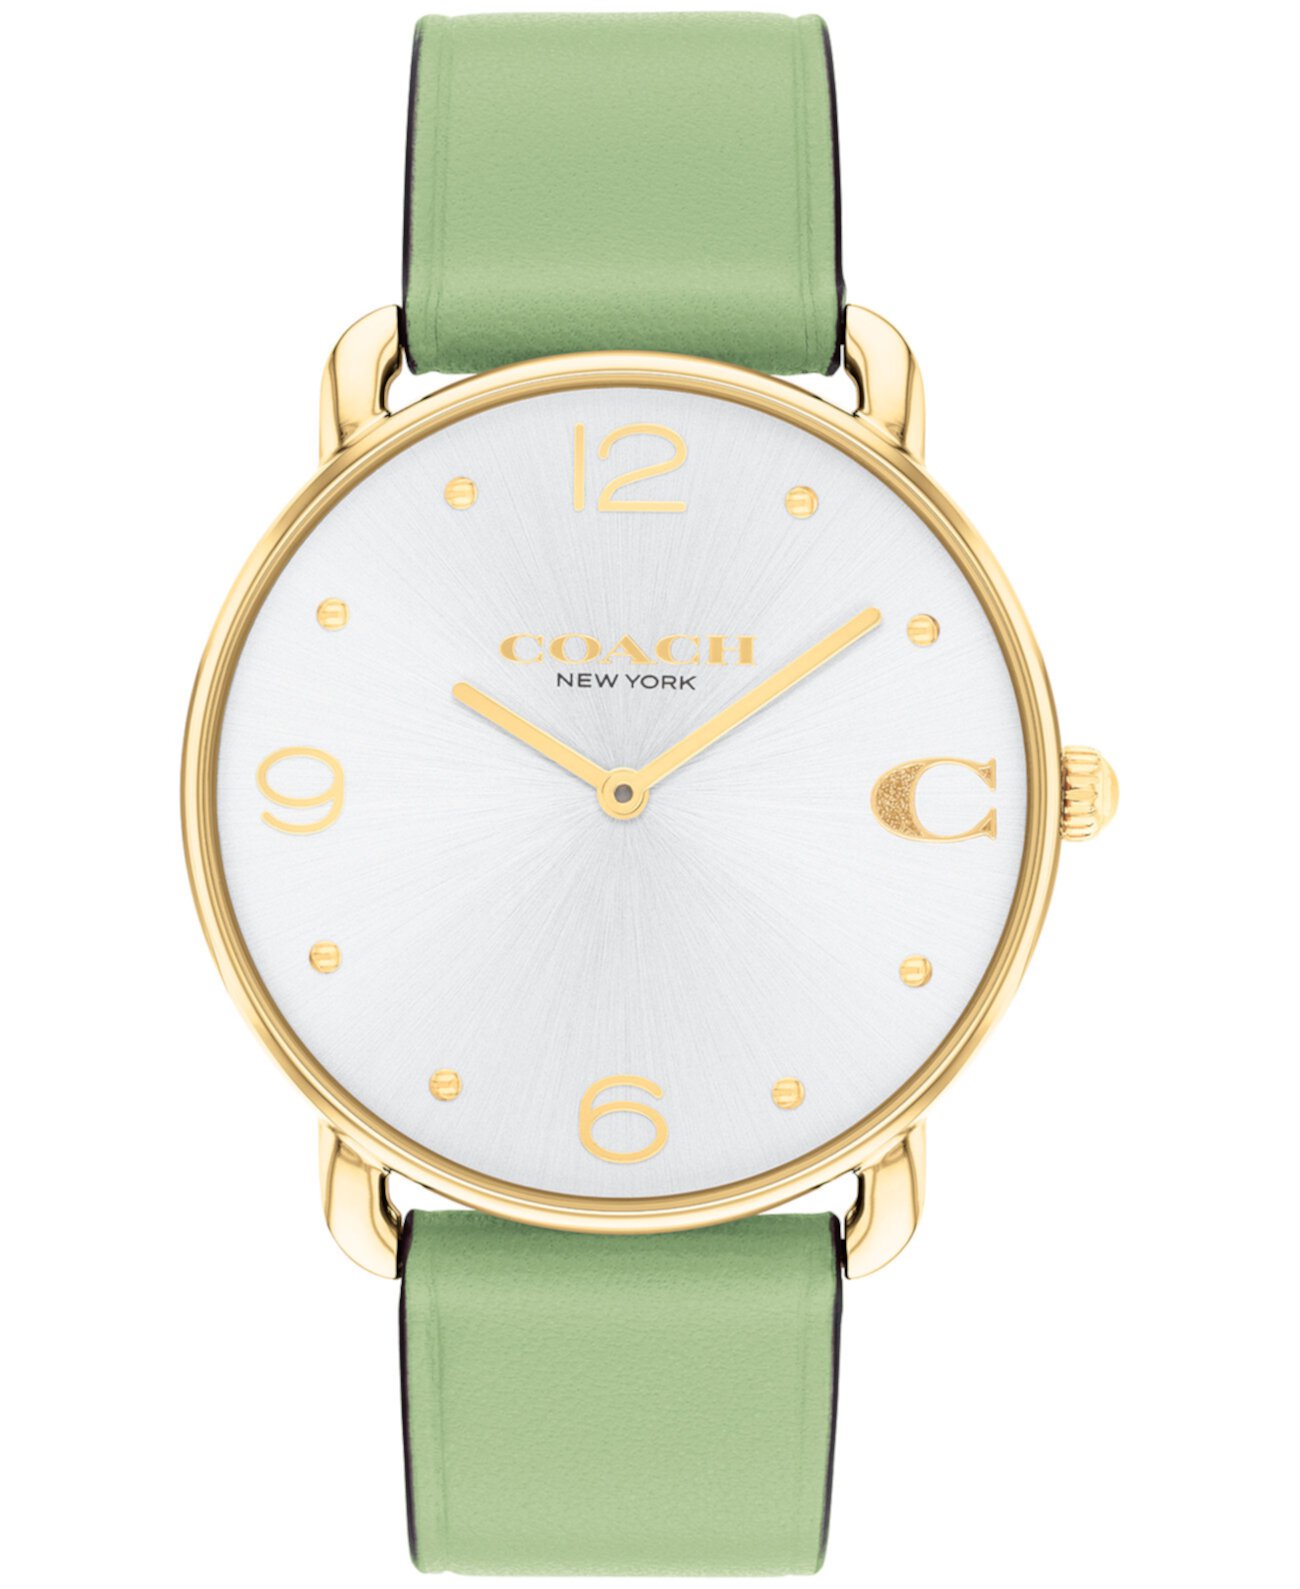 Женские зеленые кожаные часы Elliot 36 мм COACH